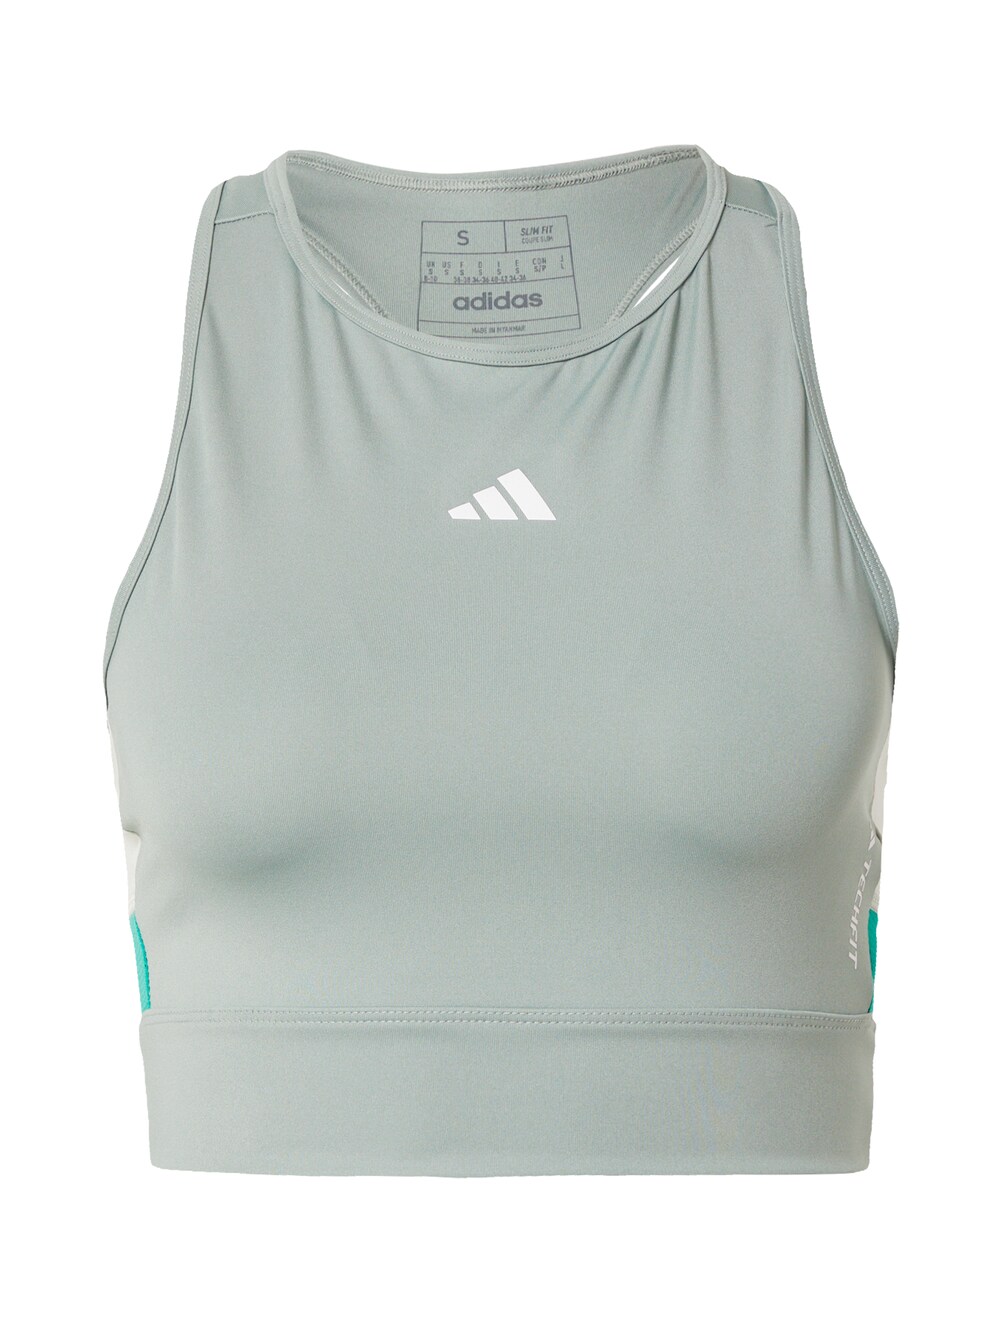 Спортивный топ Adidas Techfit Colorblock, нефритовый/пастельный зеленый цена и фото